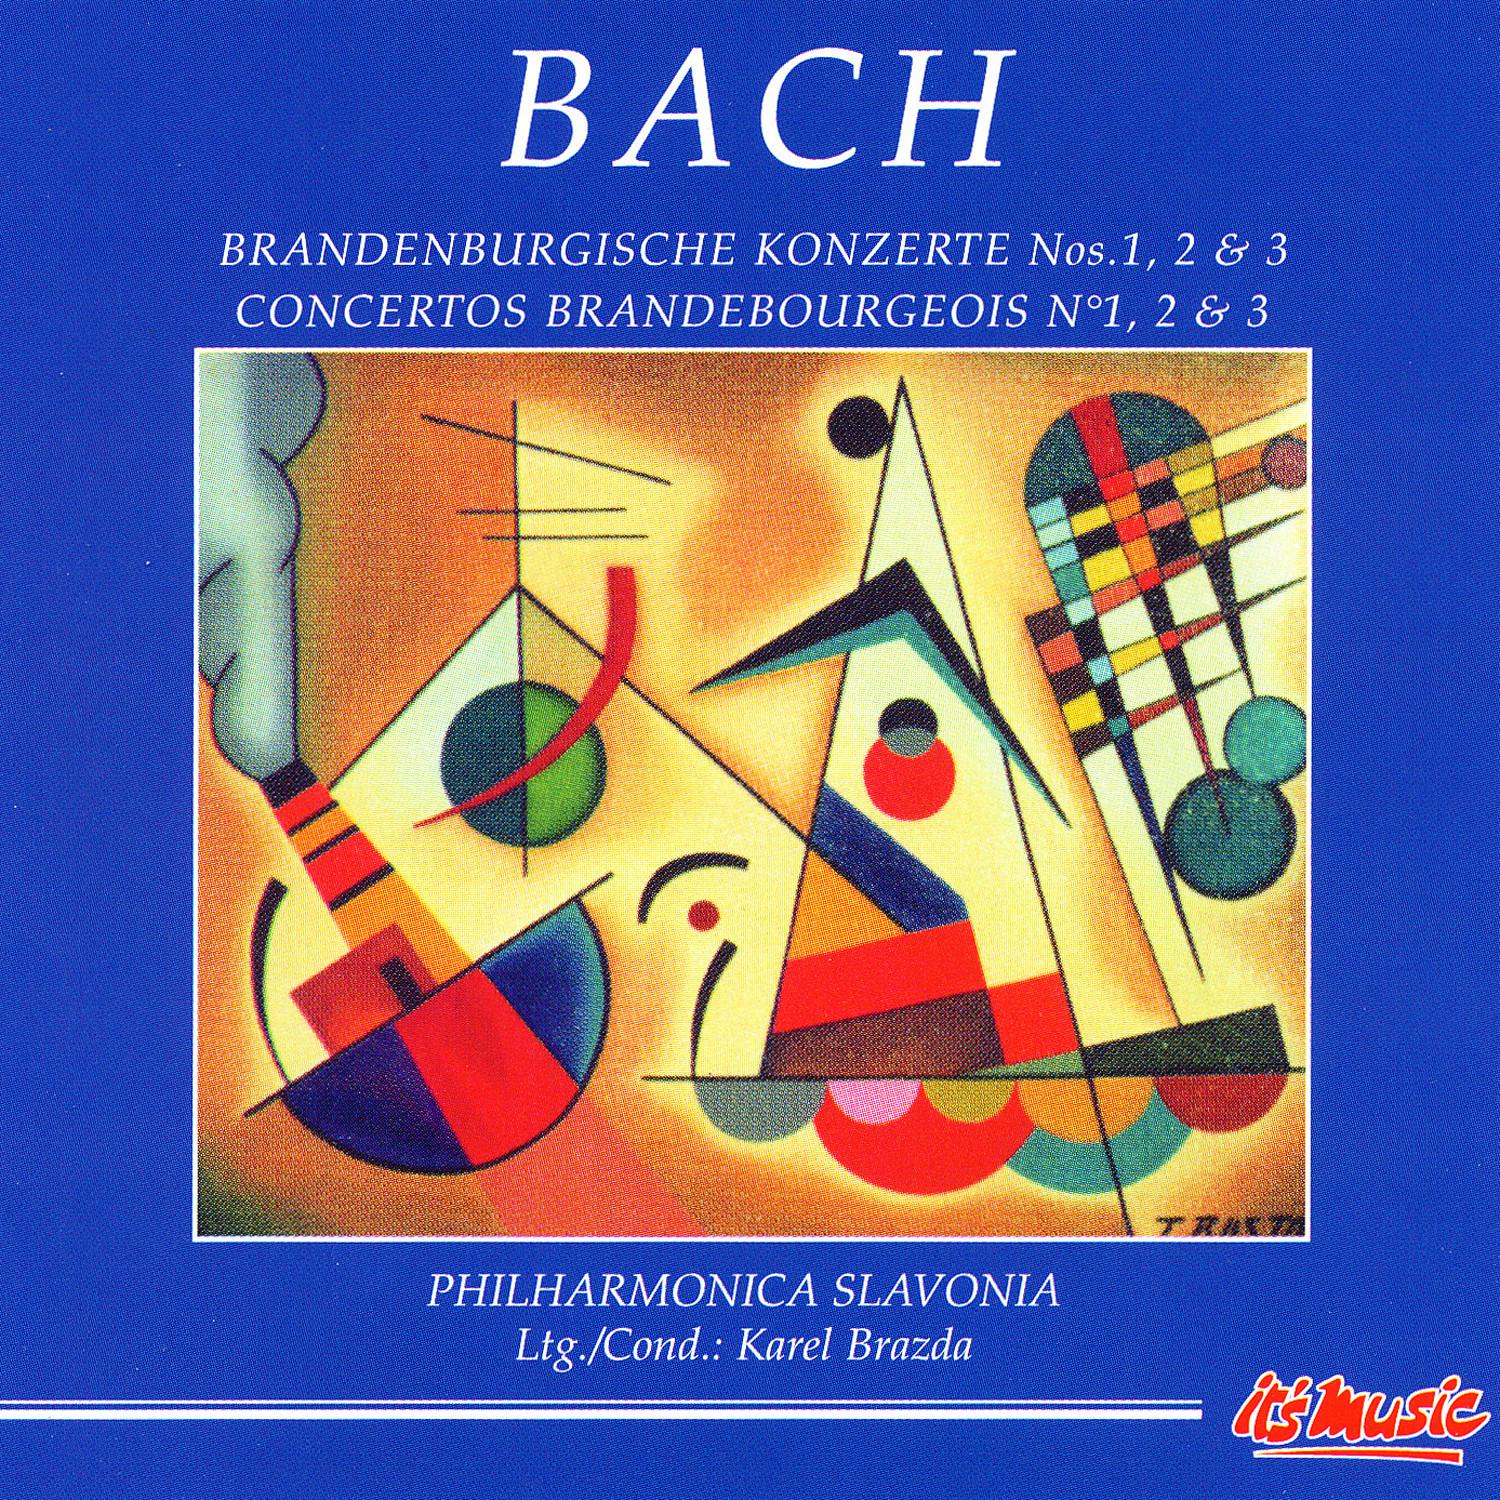 Brandenburg Concerto No. 1 in F major II. Adagio